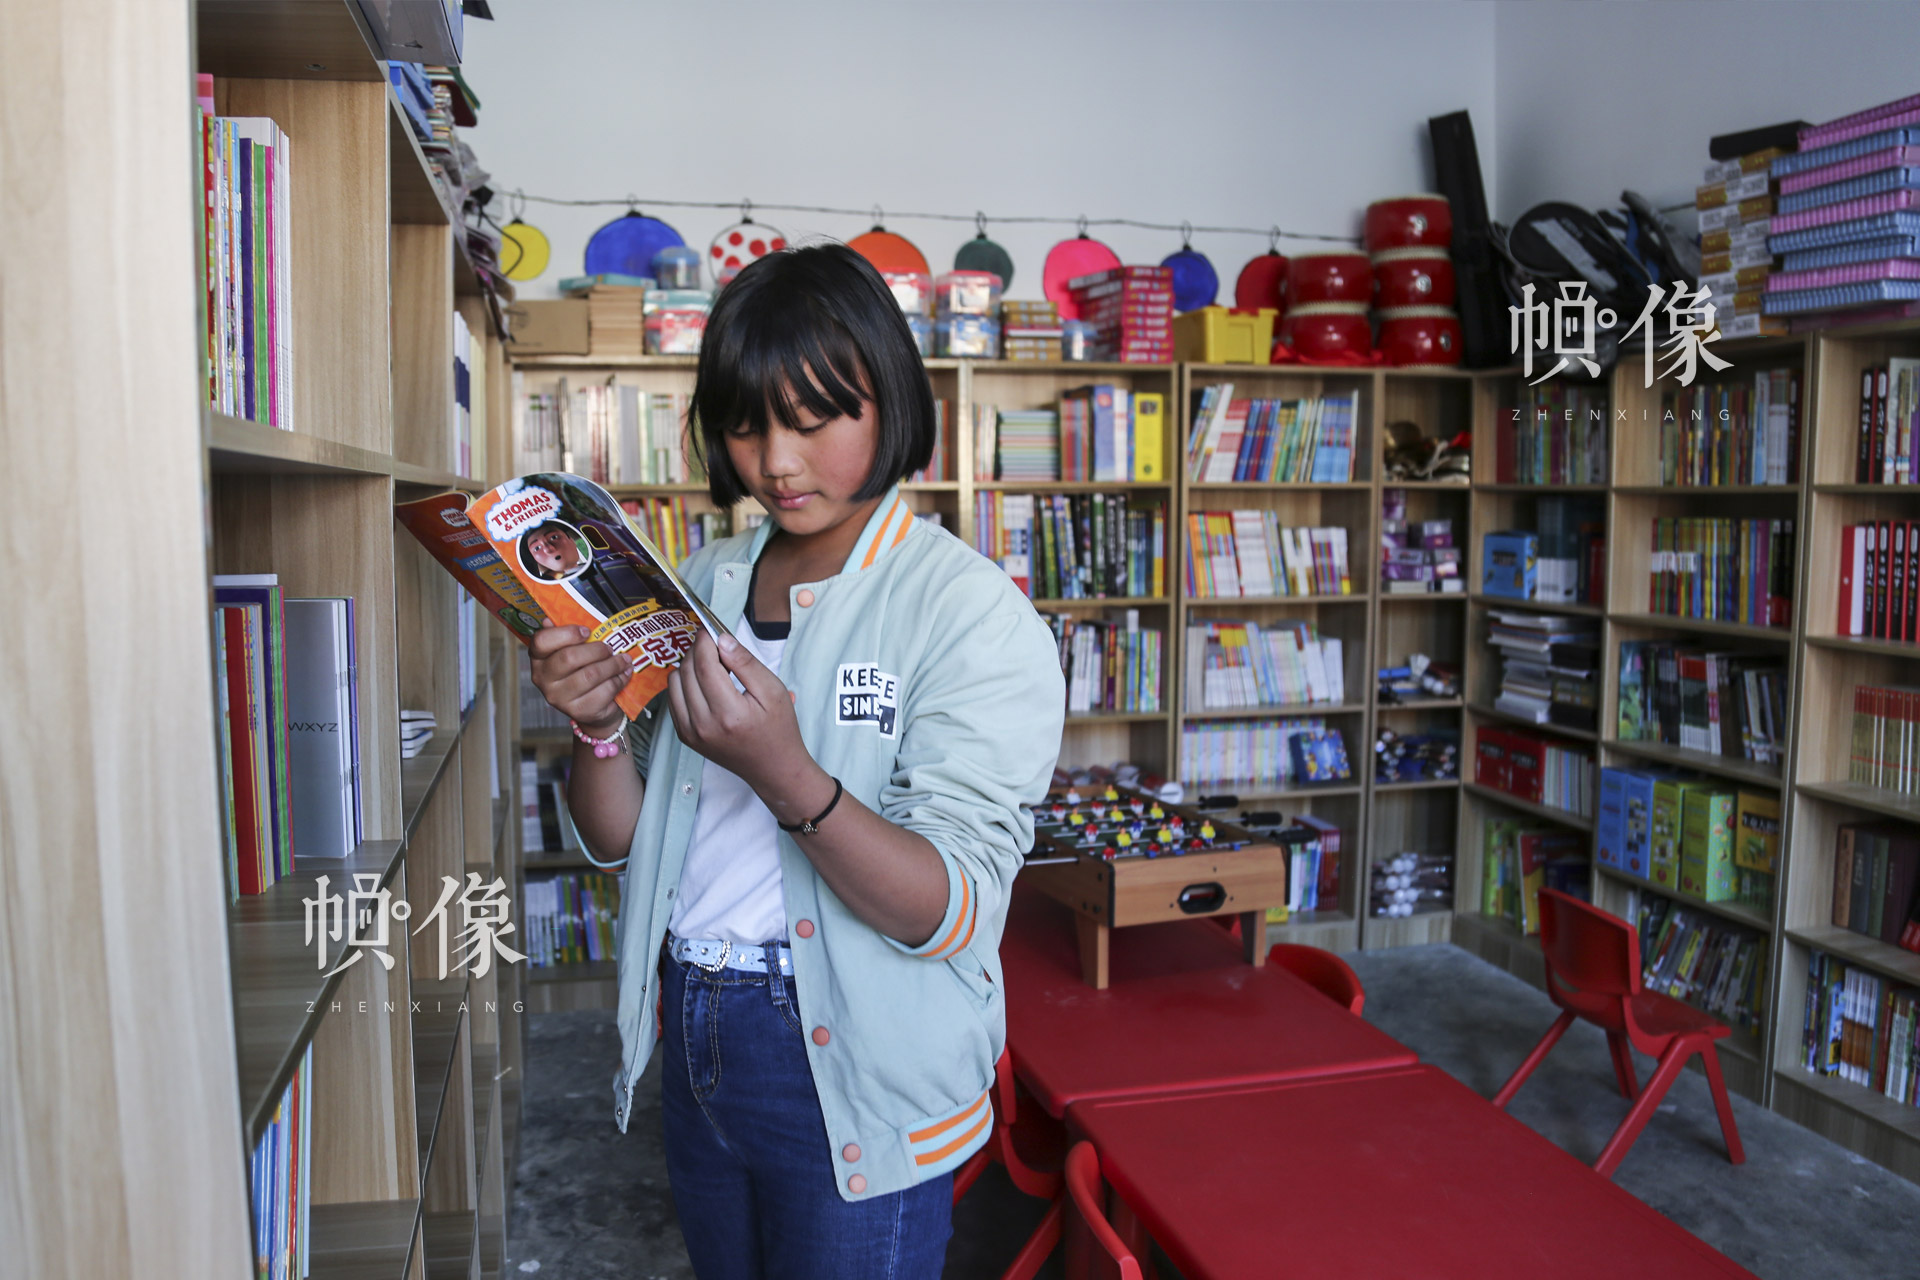 肖欢欢喜欢看励志书籍和科学杂志。周末放假，在安马村“儿童快乐家园”的阅读室里经常能看到肖欢欢。中国网记者 黄富友 摄